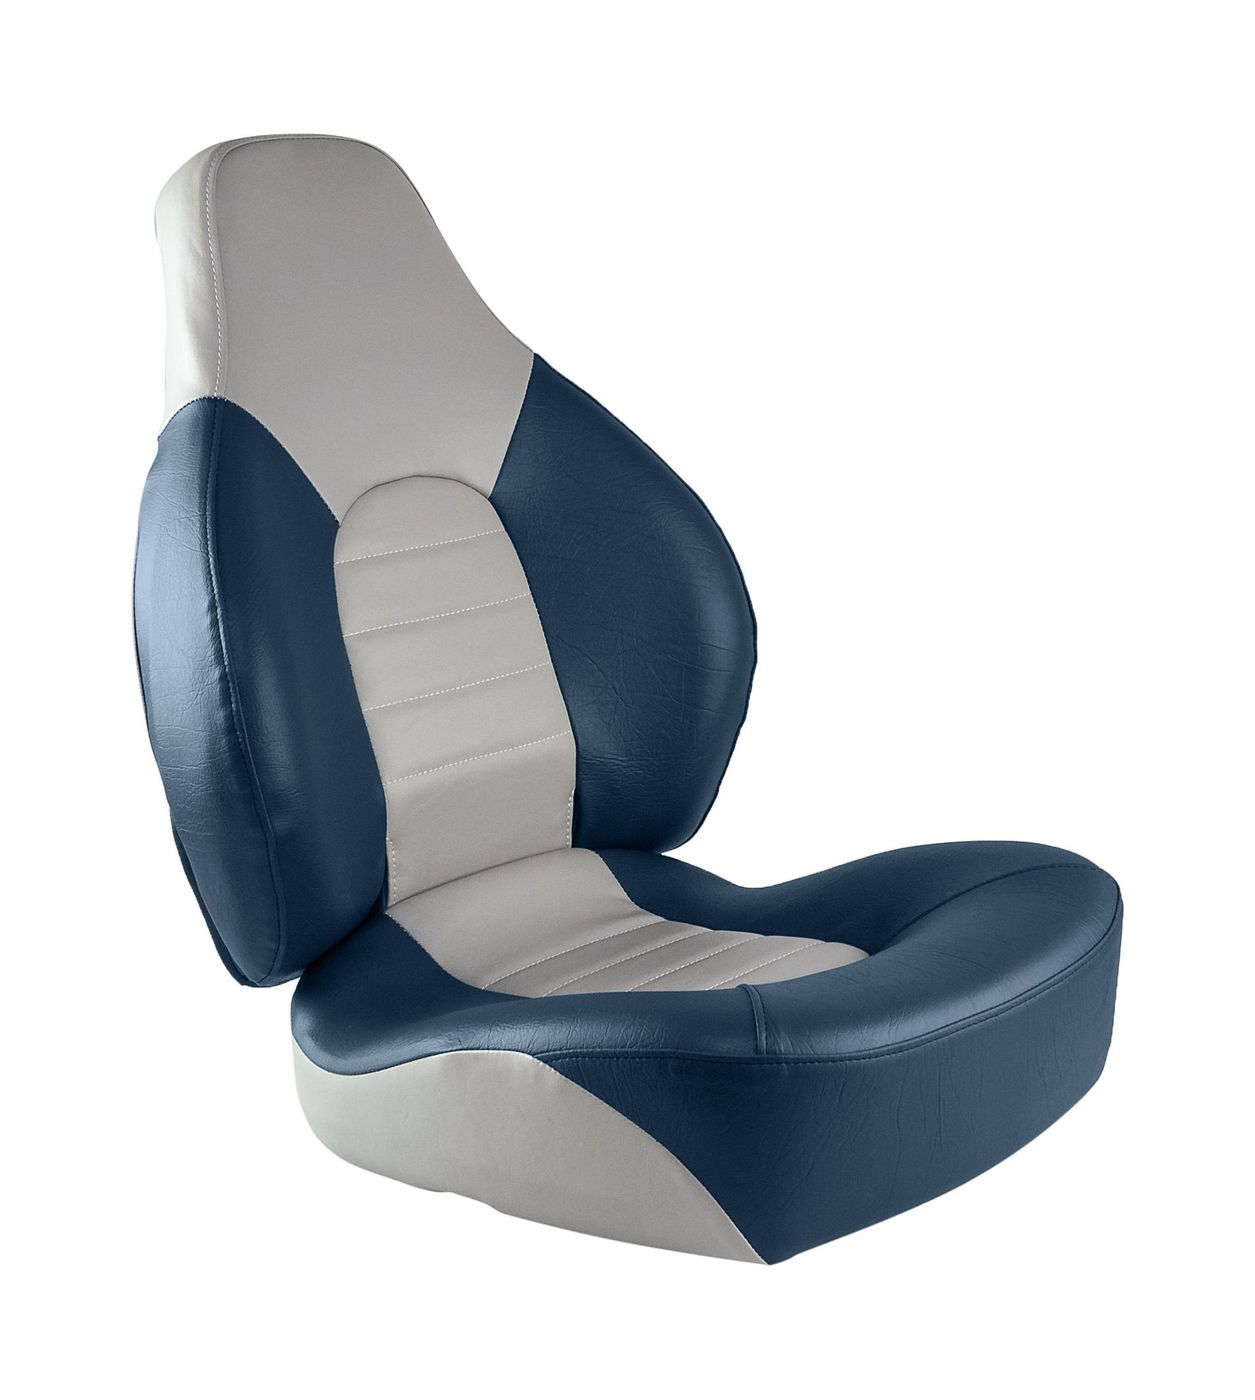 Кресло складное мягкое FISH PRO, цвет серый/синий 1041631 кресло складное мягкое premium wave серый синий 1062031